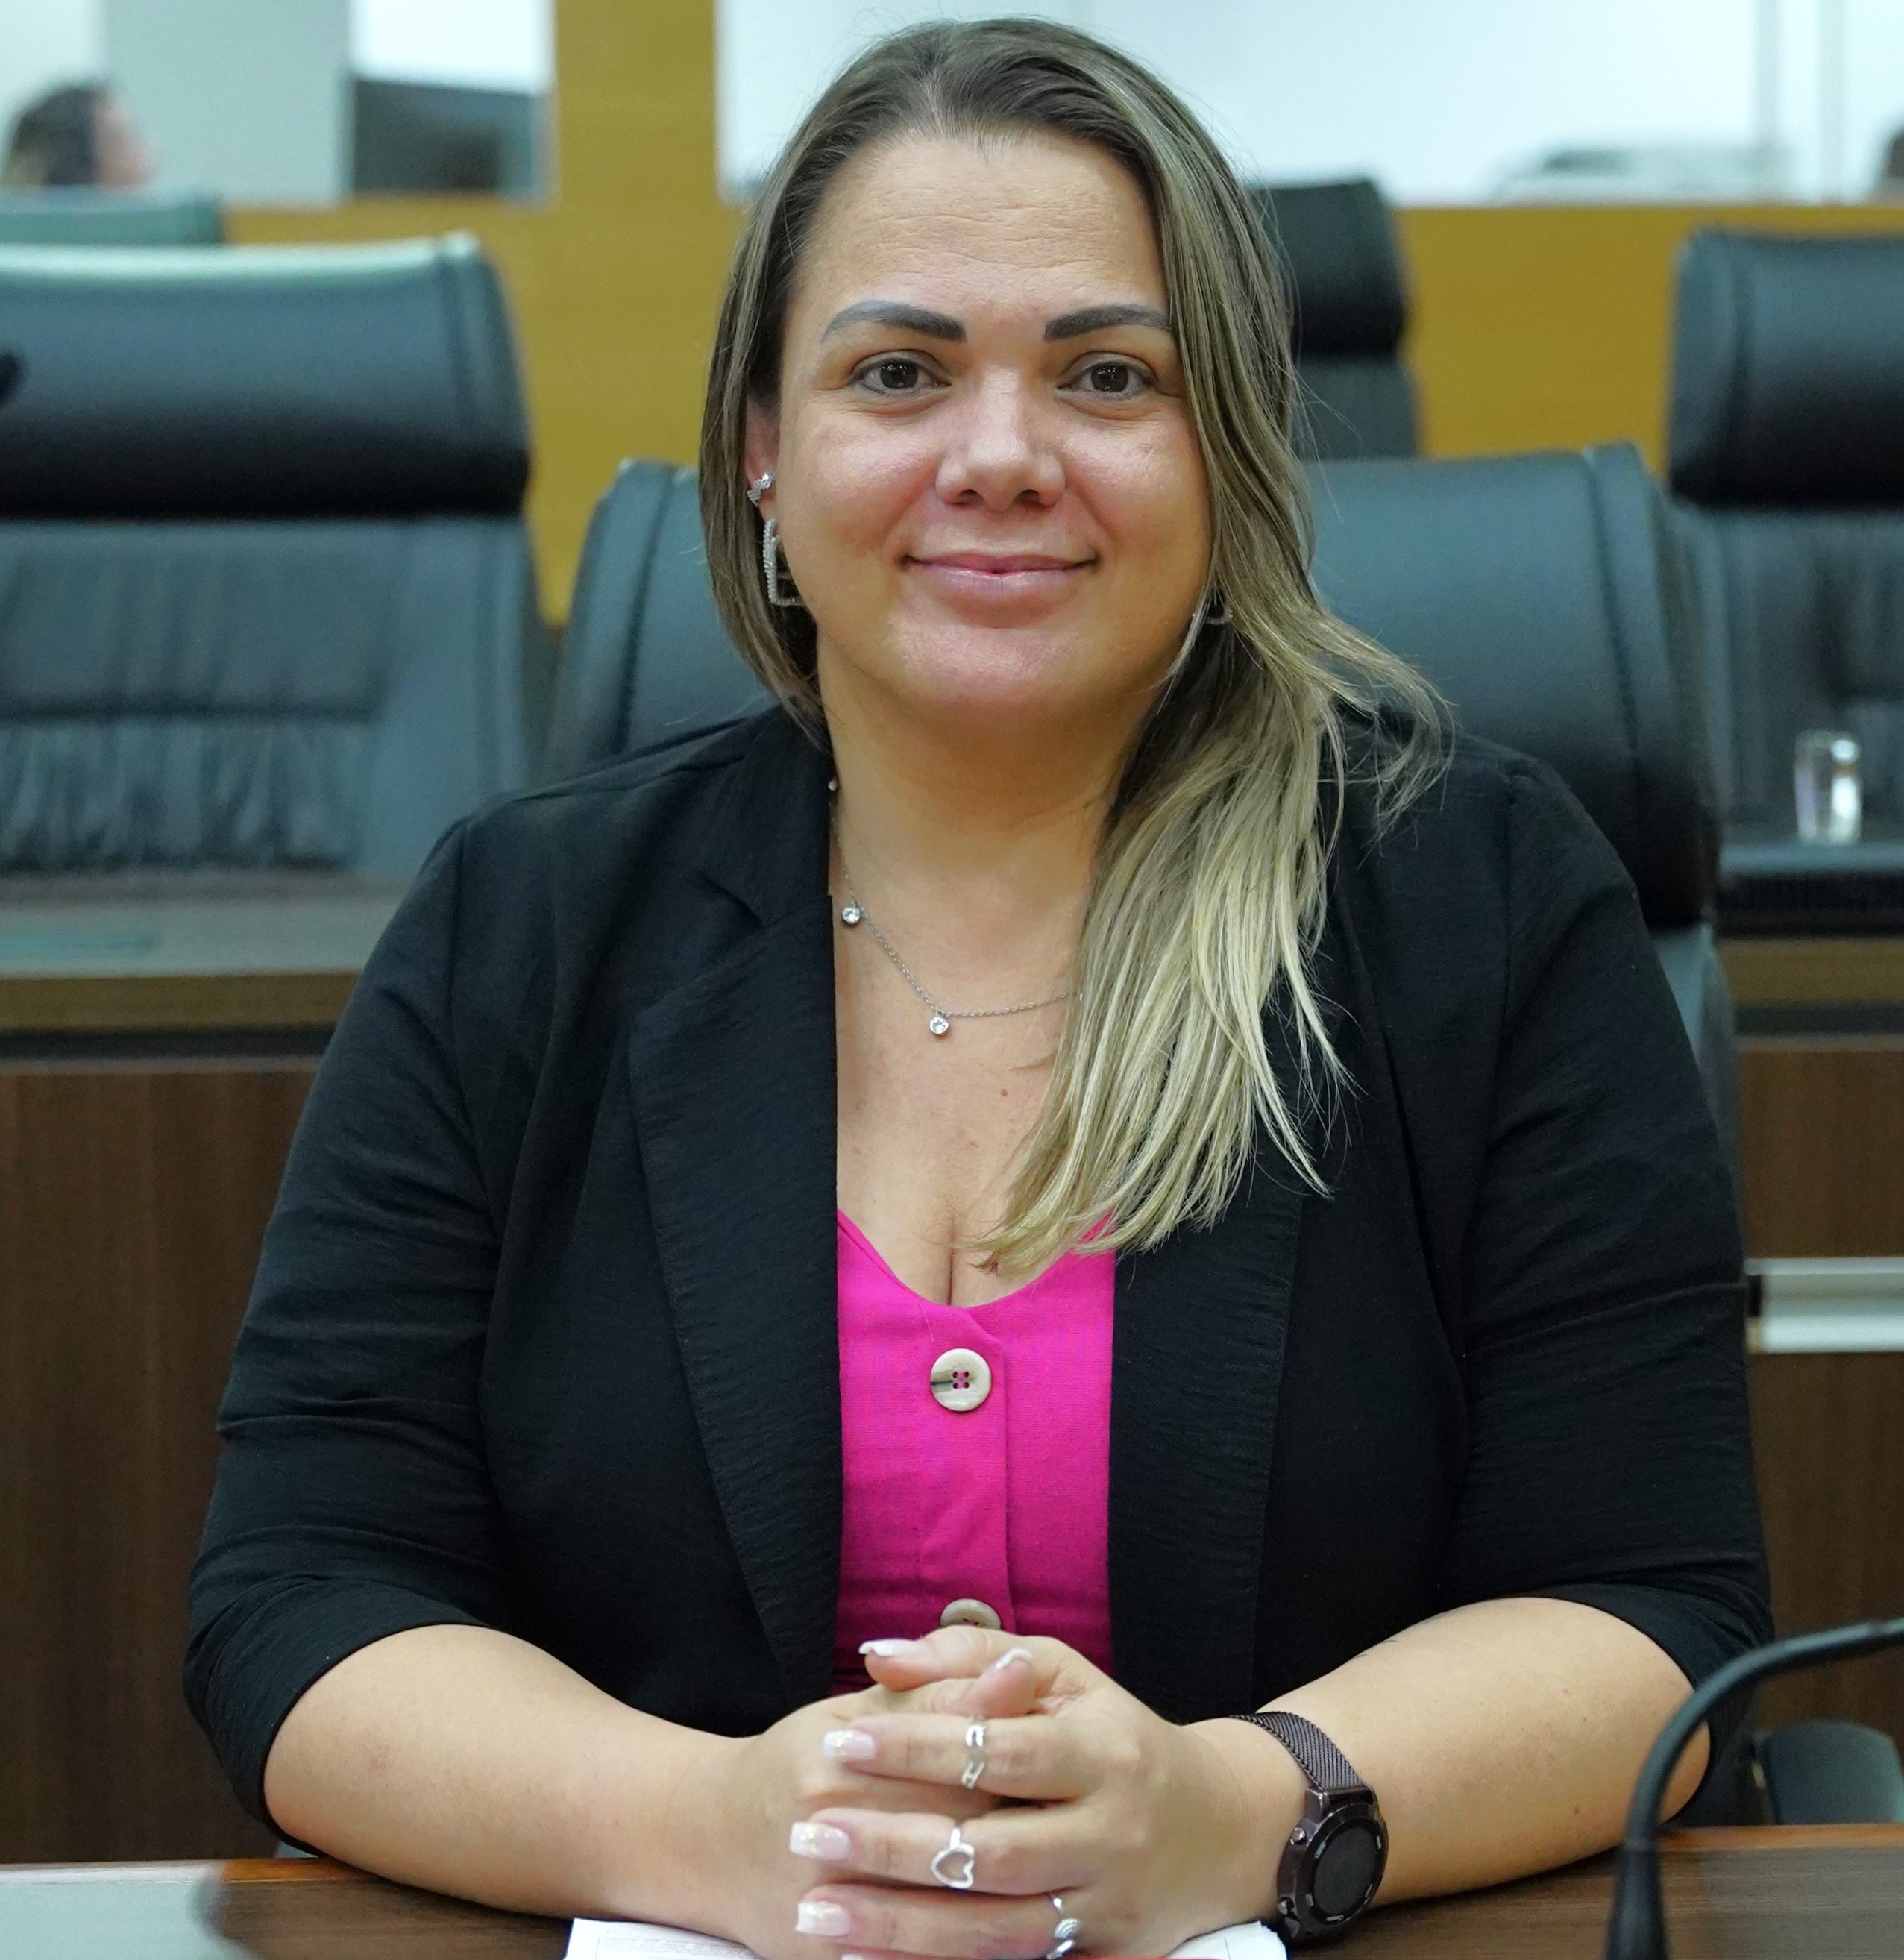 TÁ PAGO: Teixeirópolis recebe emenda parlamentar para agricultura familiar